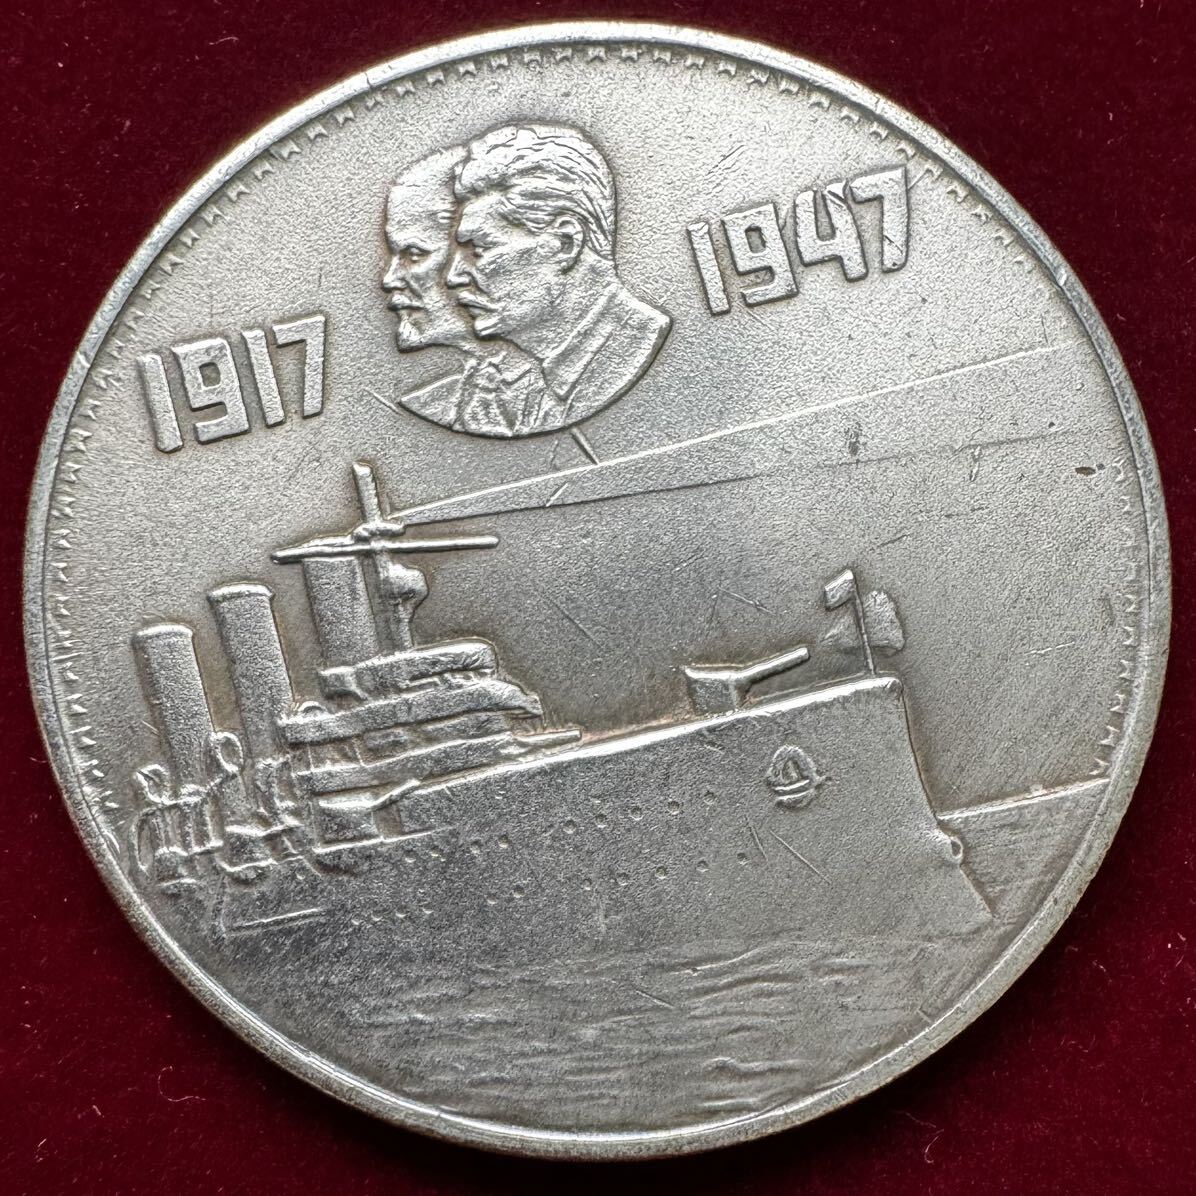 ロシア 硬貨 古銭 ソビエト連邦 1947年 革命30周年記念 レーニン スターリン 潜水艦 記念幣 コイン 銀貨 外国古銭 海外硬貨 の画像1